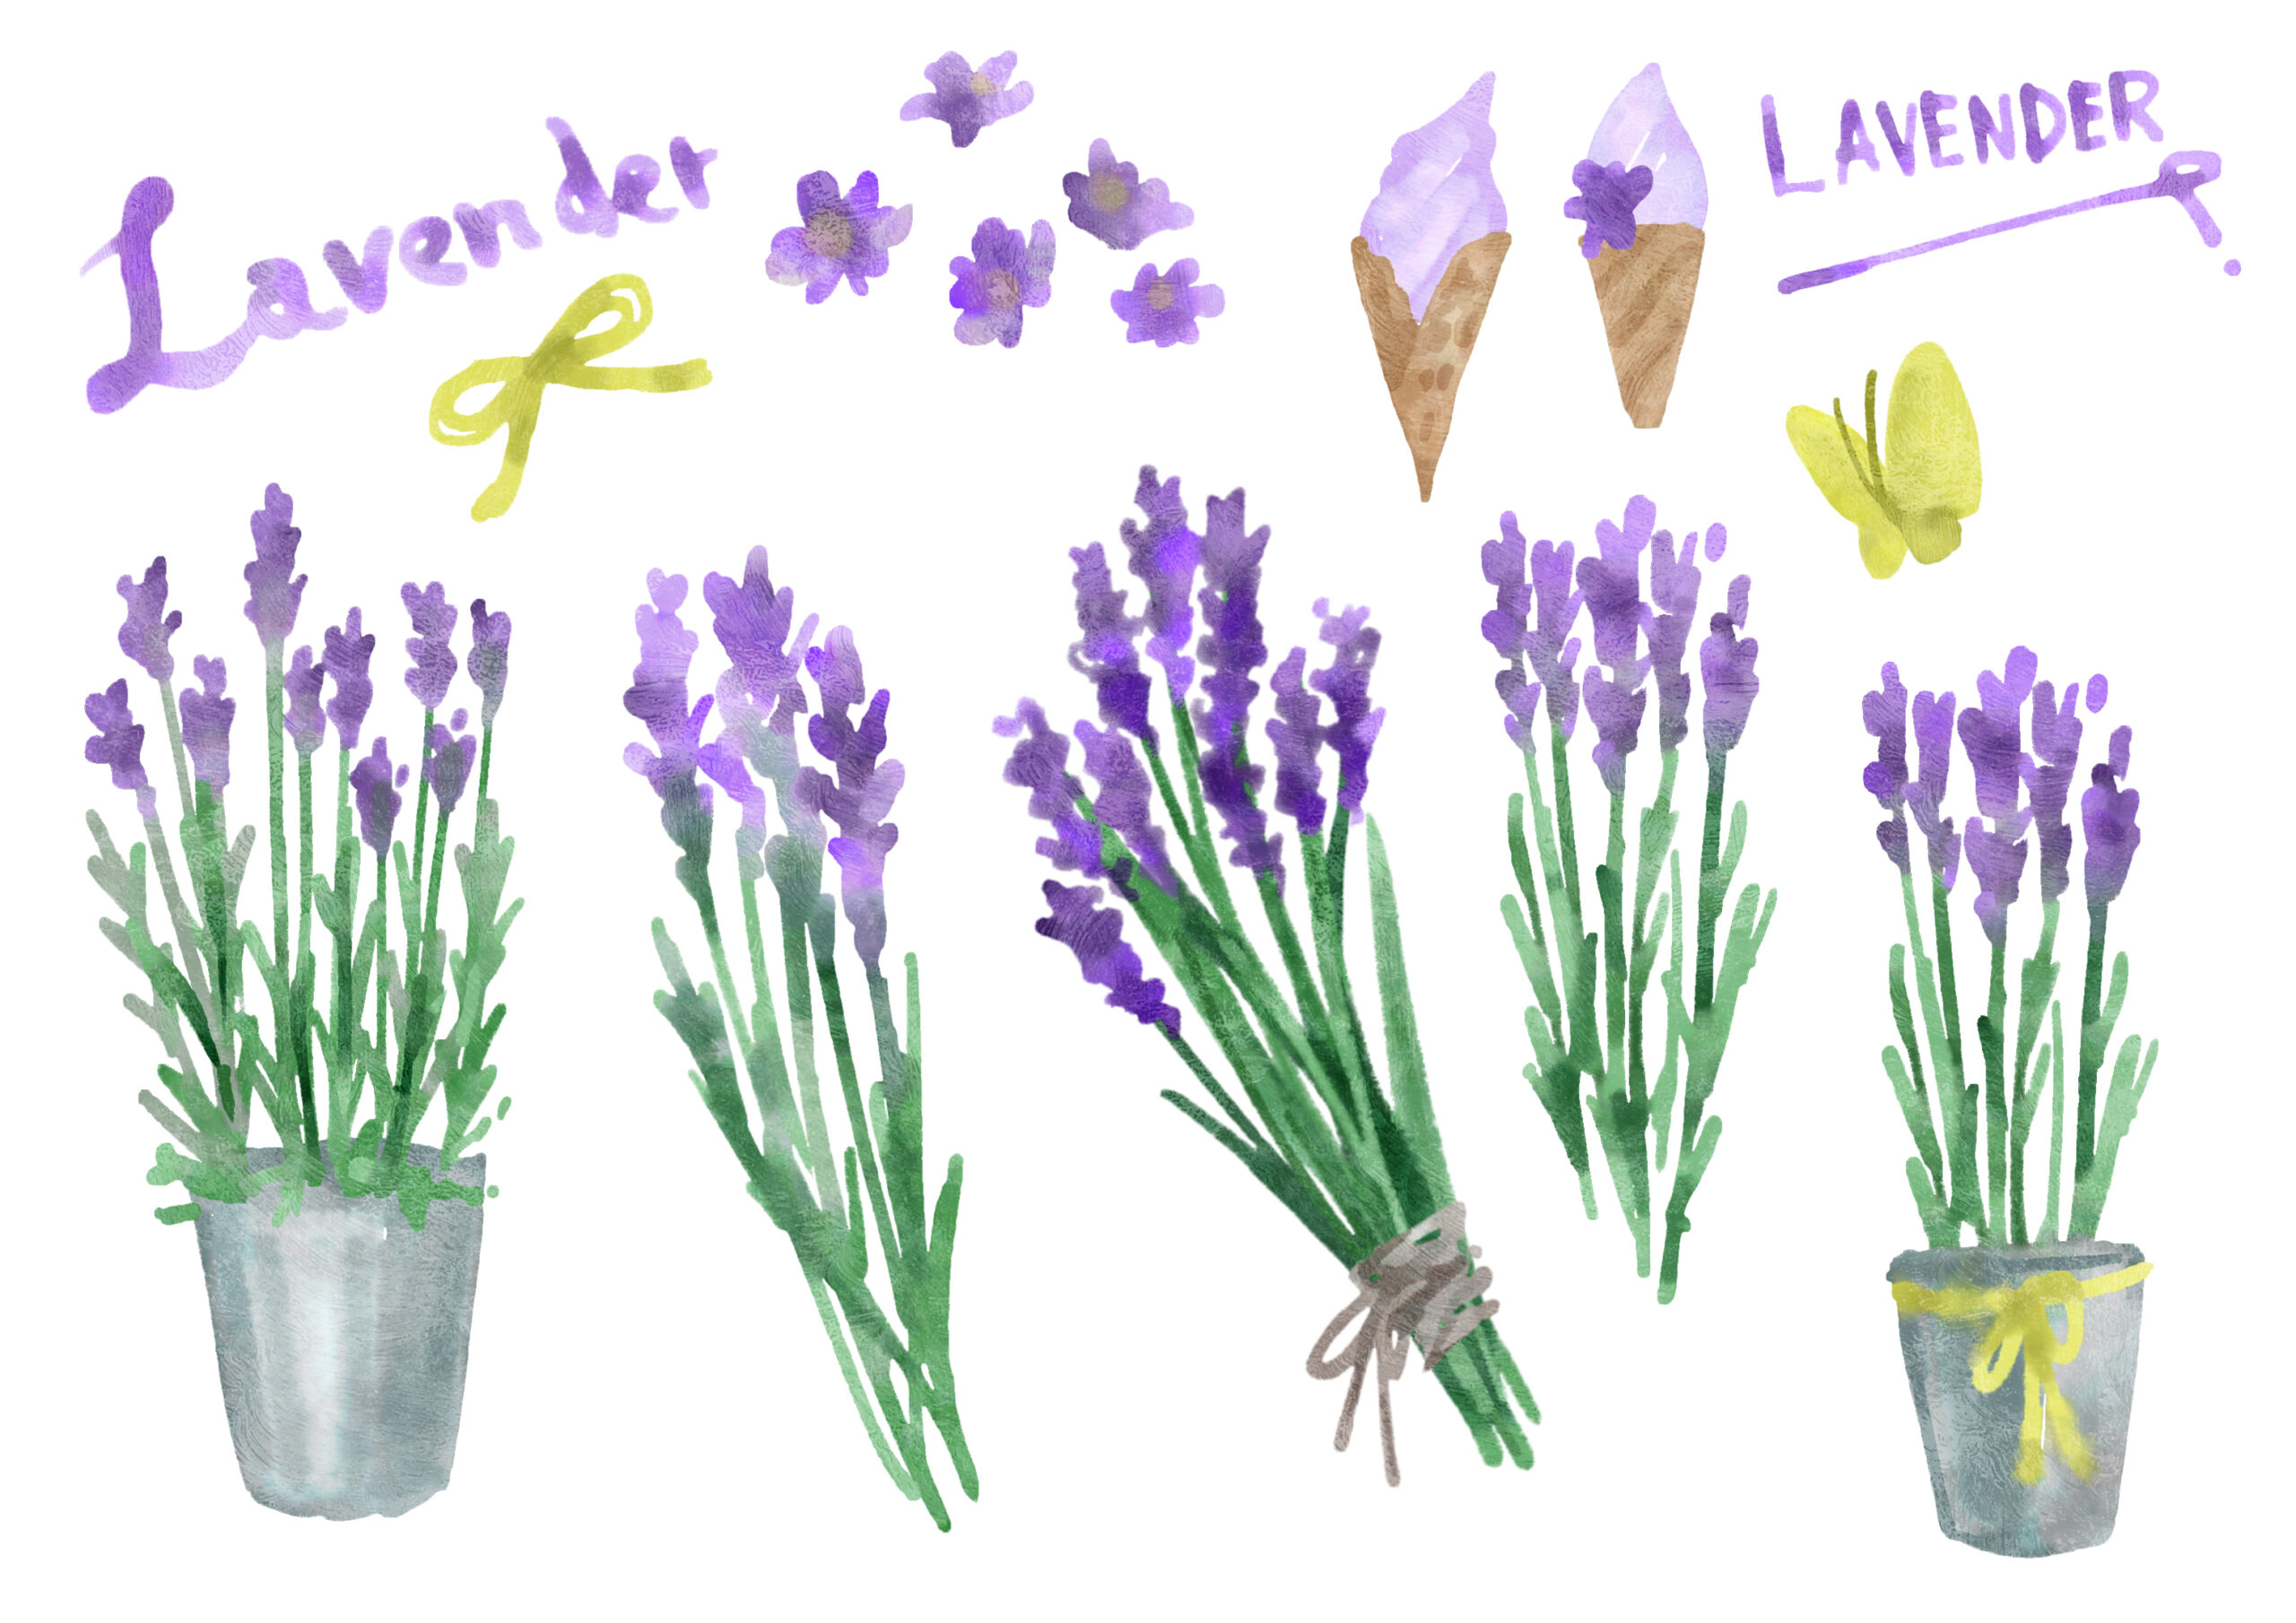 7月10日誕生花を工作 ラベンダー 花言葉 描き方 折り紙 A Simple Way To Make A Paper Craft Lavender 介護士しげゆきブログ